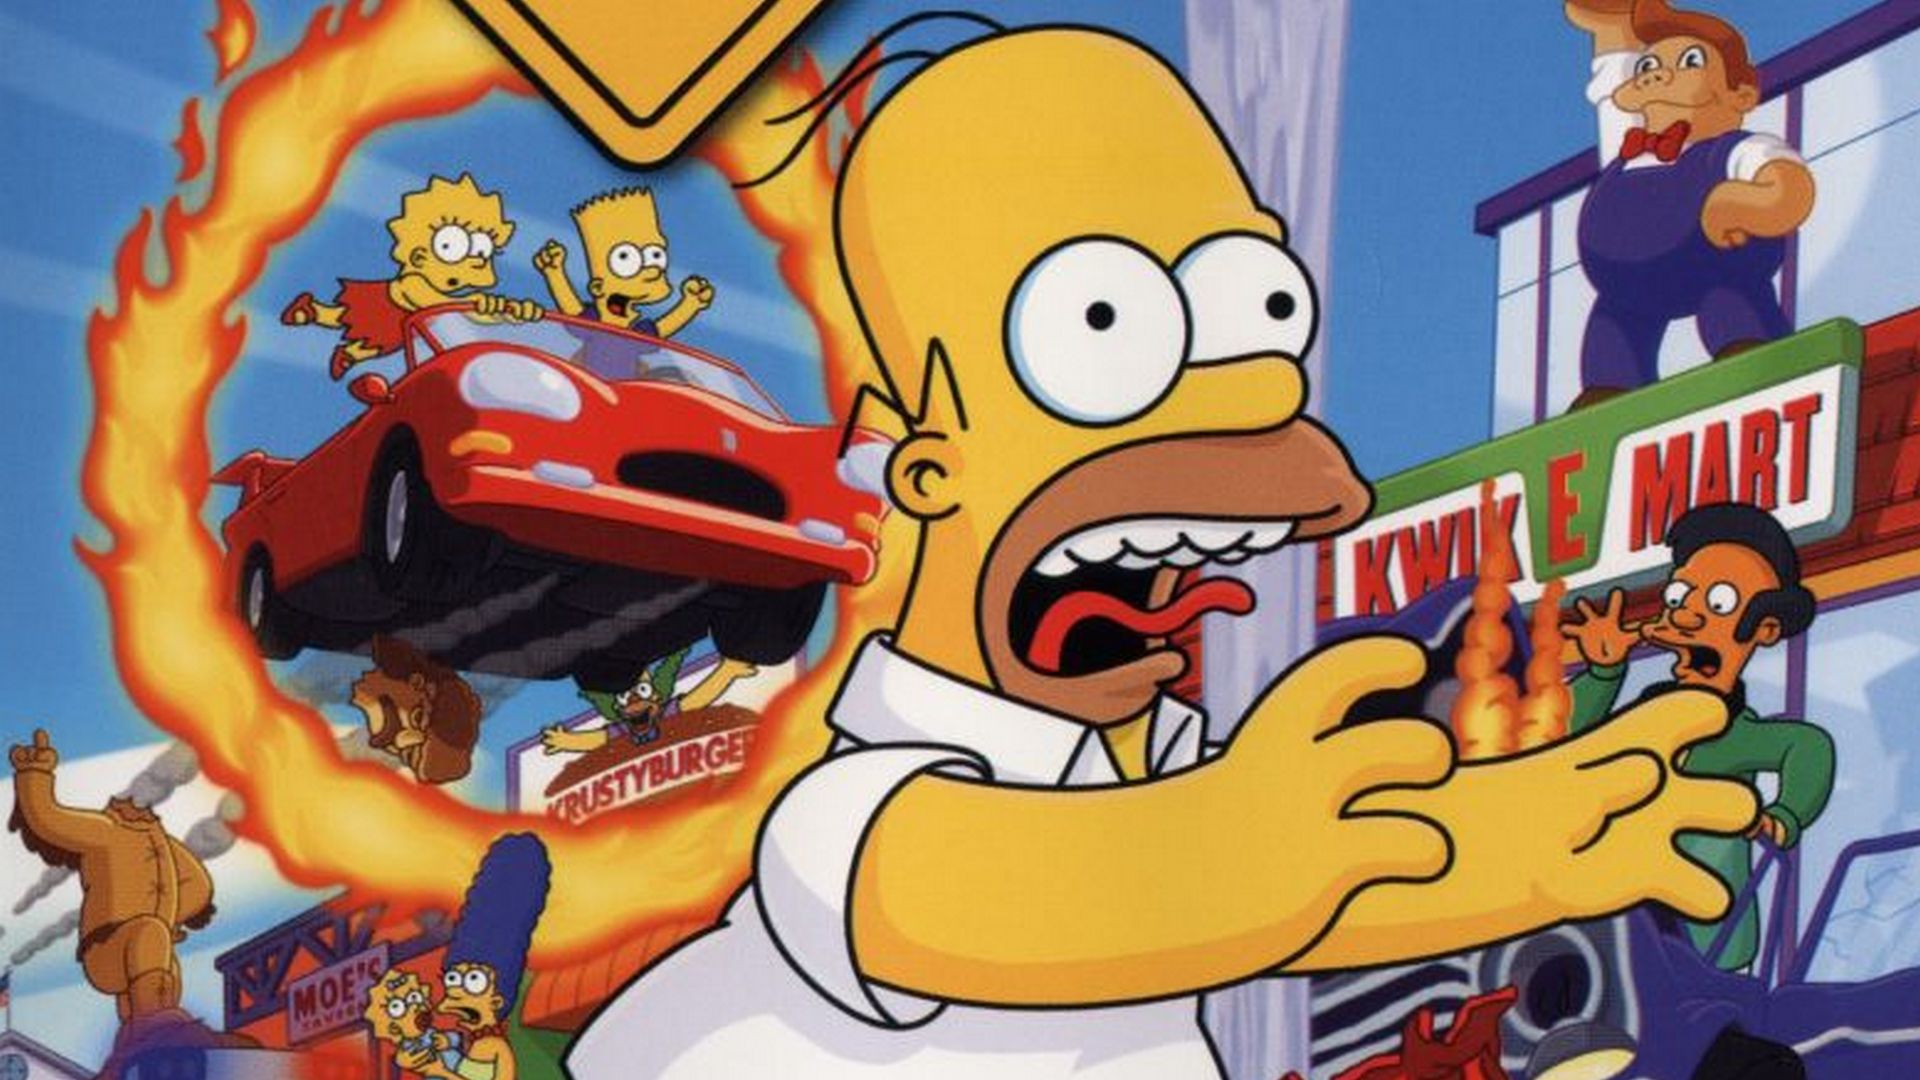 The Simpsons Hit & Run: Soundtrack auf Spotify und Apple Music veröffentlicht.